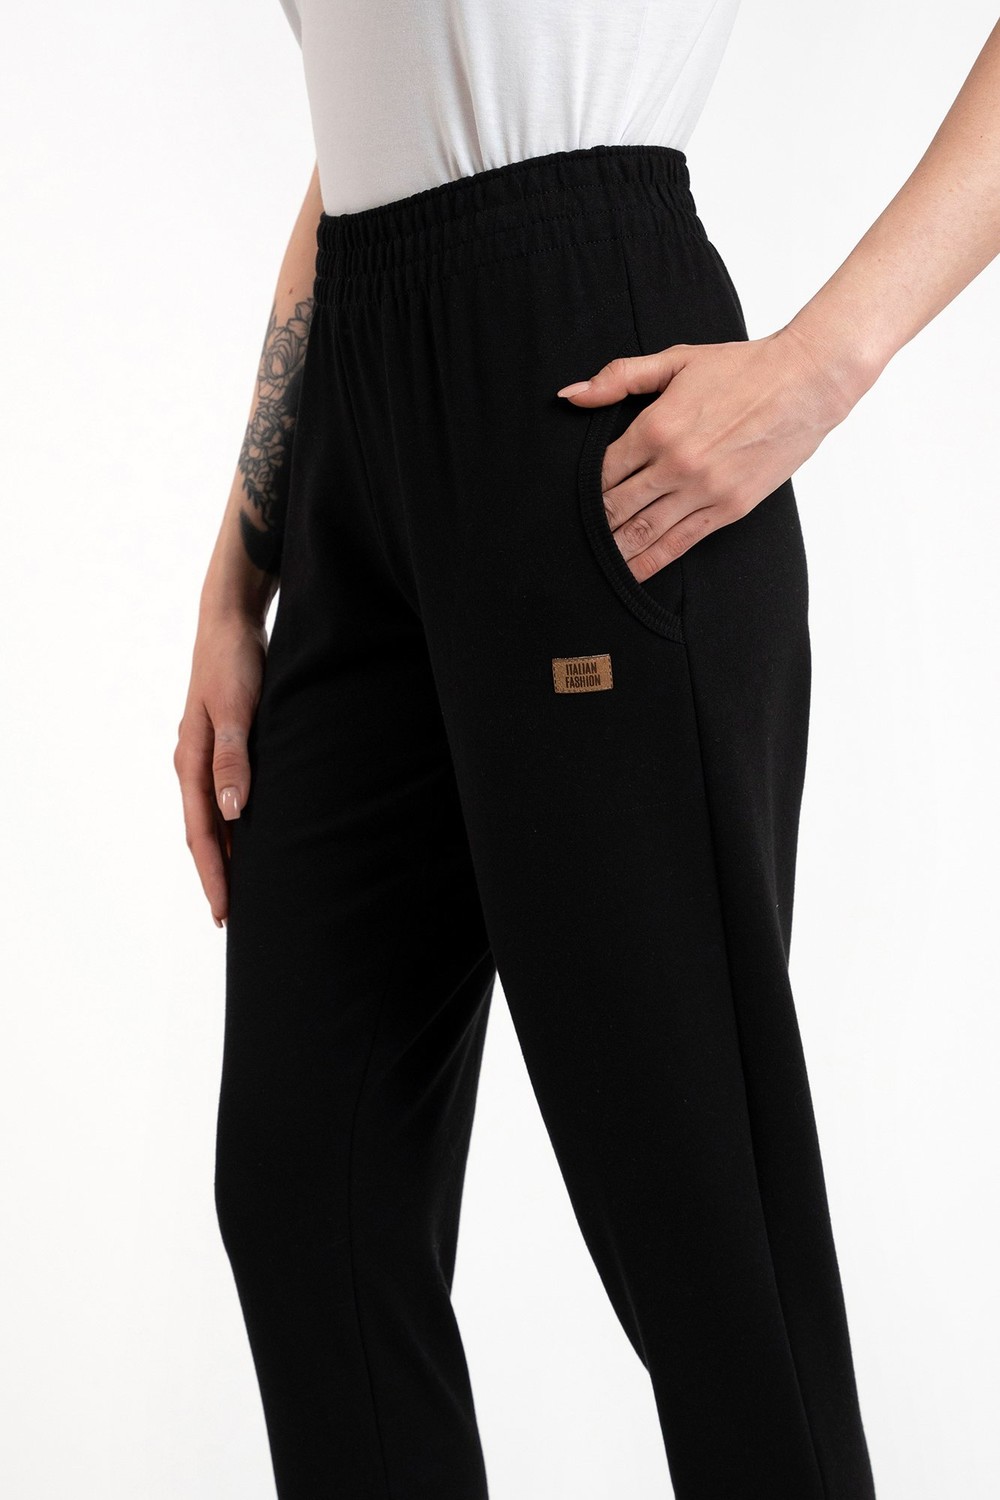 Dámské dlouhé kalhoty Malmo - černé